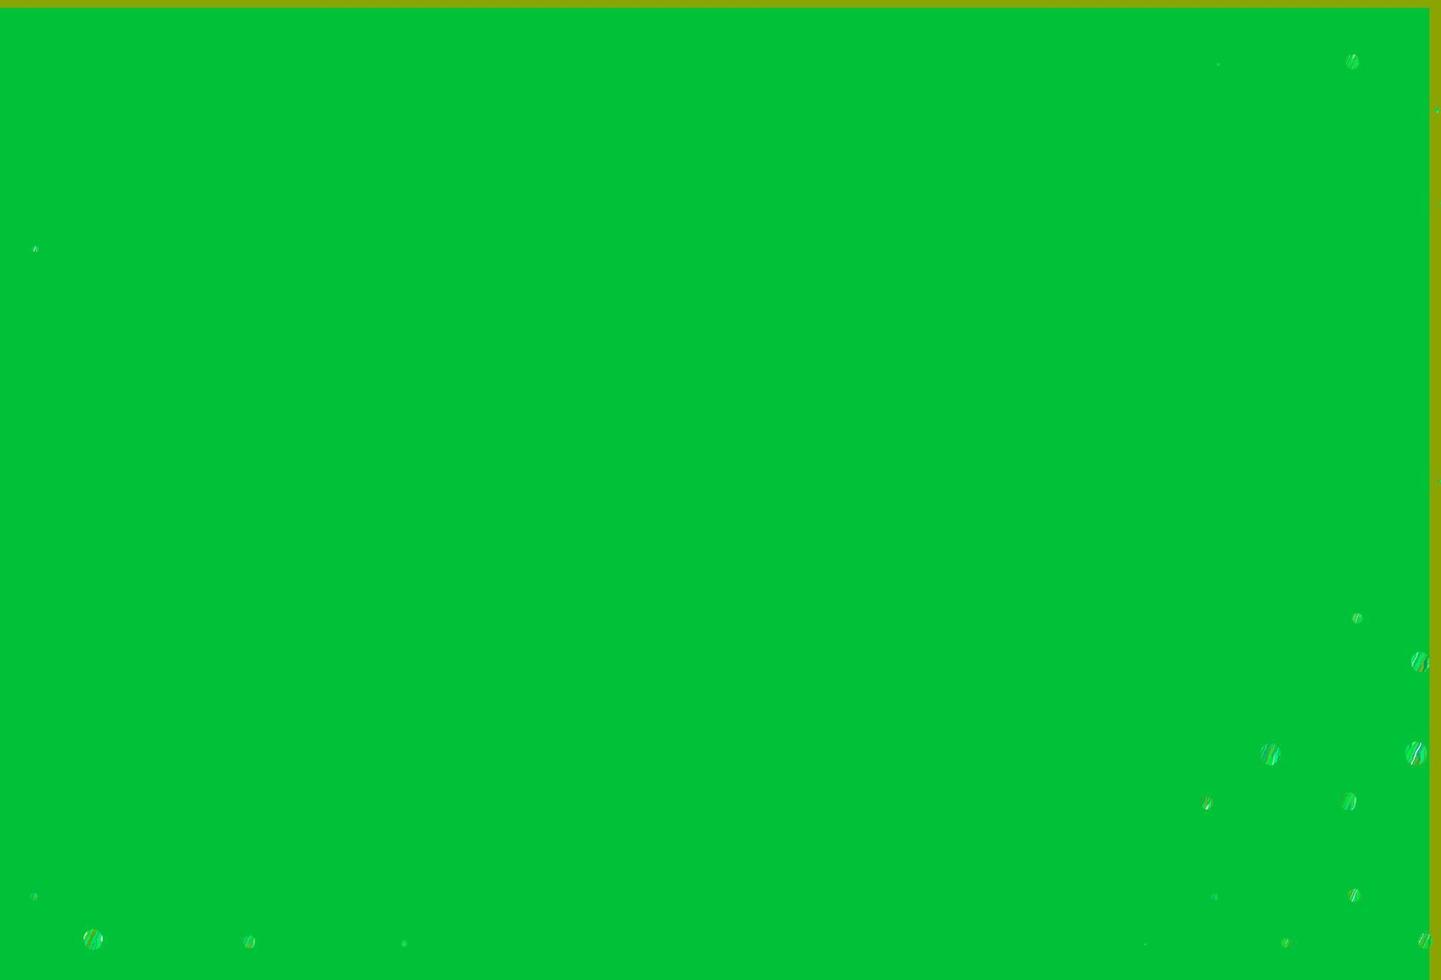 sfondo vettoriale verde chiaro, giallo con bolle.